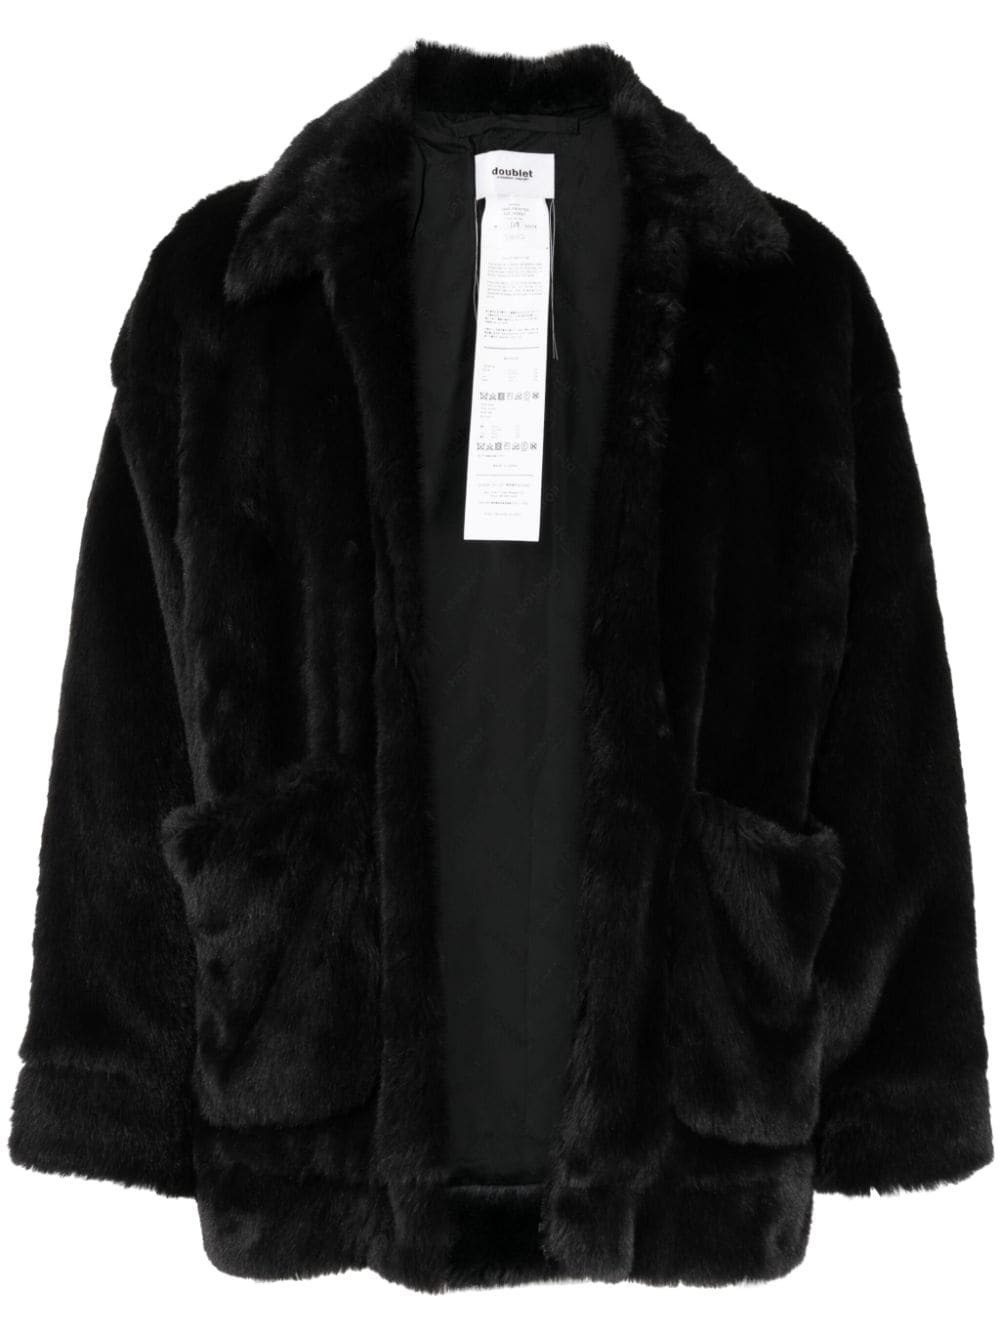 DOUBLET - Faux Fur Jacket Doublet